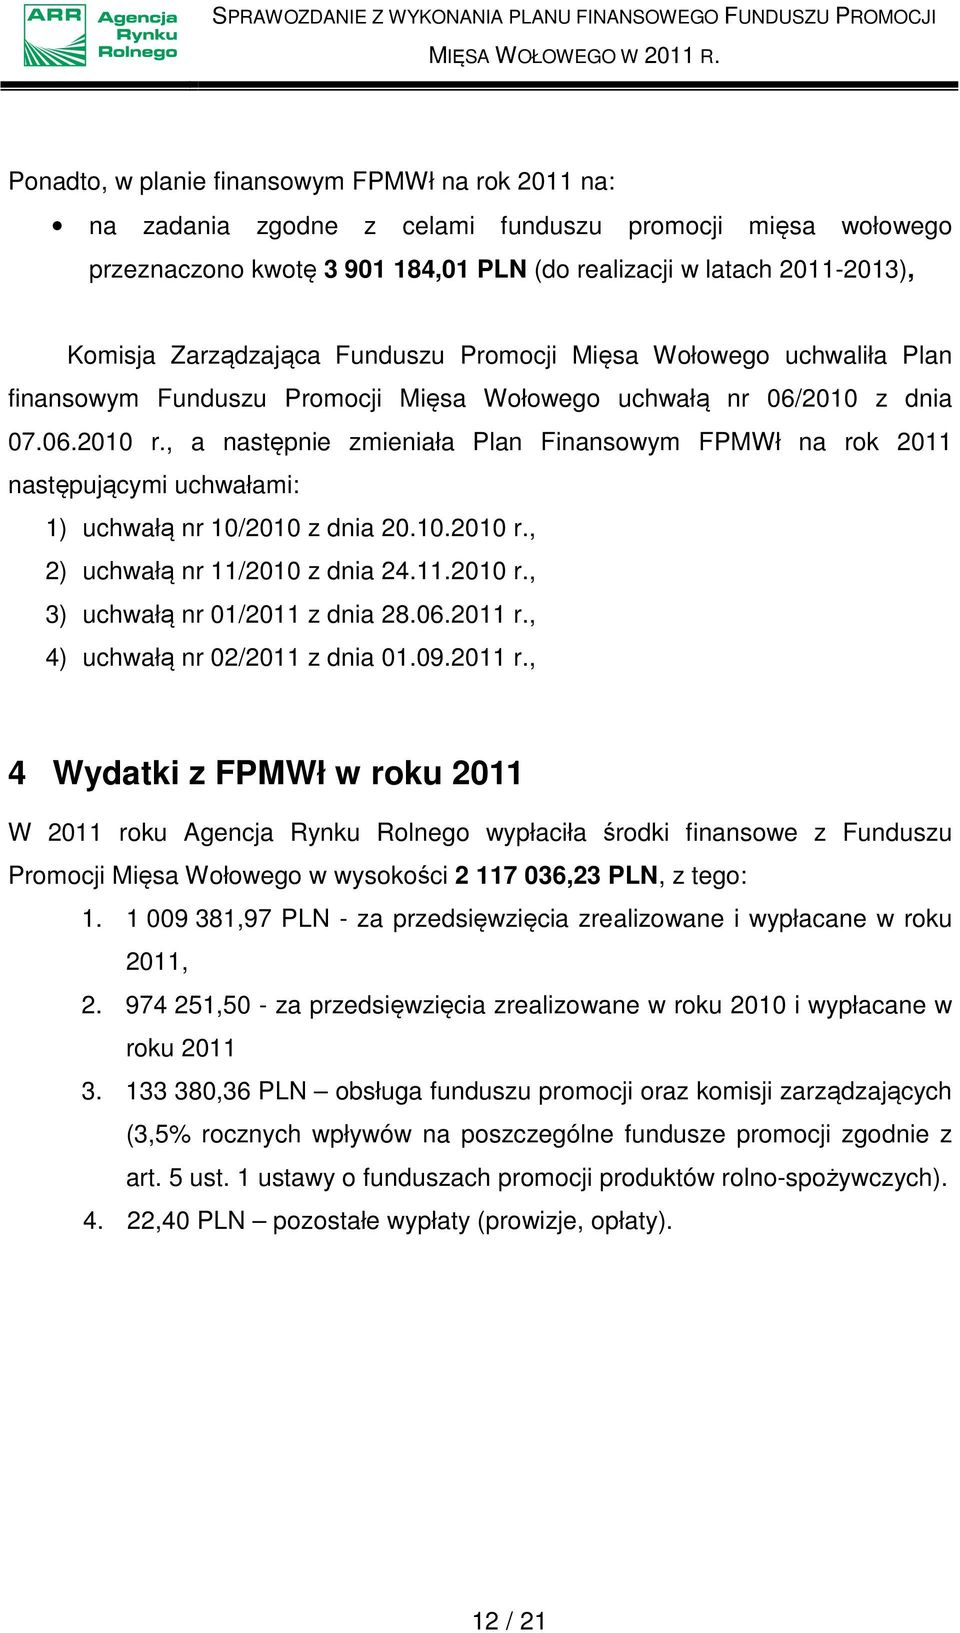 , a następnie zmieniała Plan Finansowym FPMWł na rok 2011 następującymi uchwałami: 1) uchwałą nr 10/2010 z dnia 20.10.2010 r., 2) uchwałą nr 11/2010 z dnia 24.11.2010 r., 3) uchwałą nr 01/2011 z dnia 28.